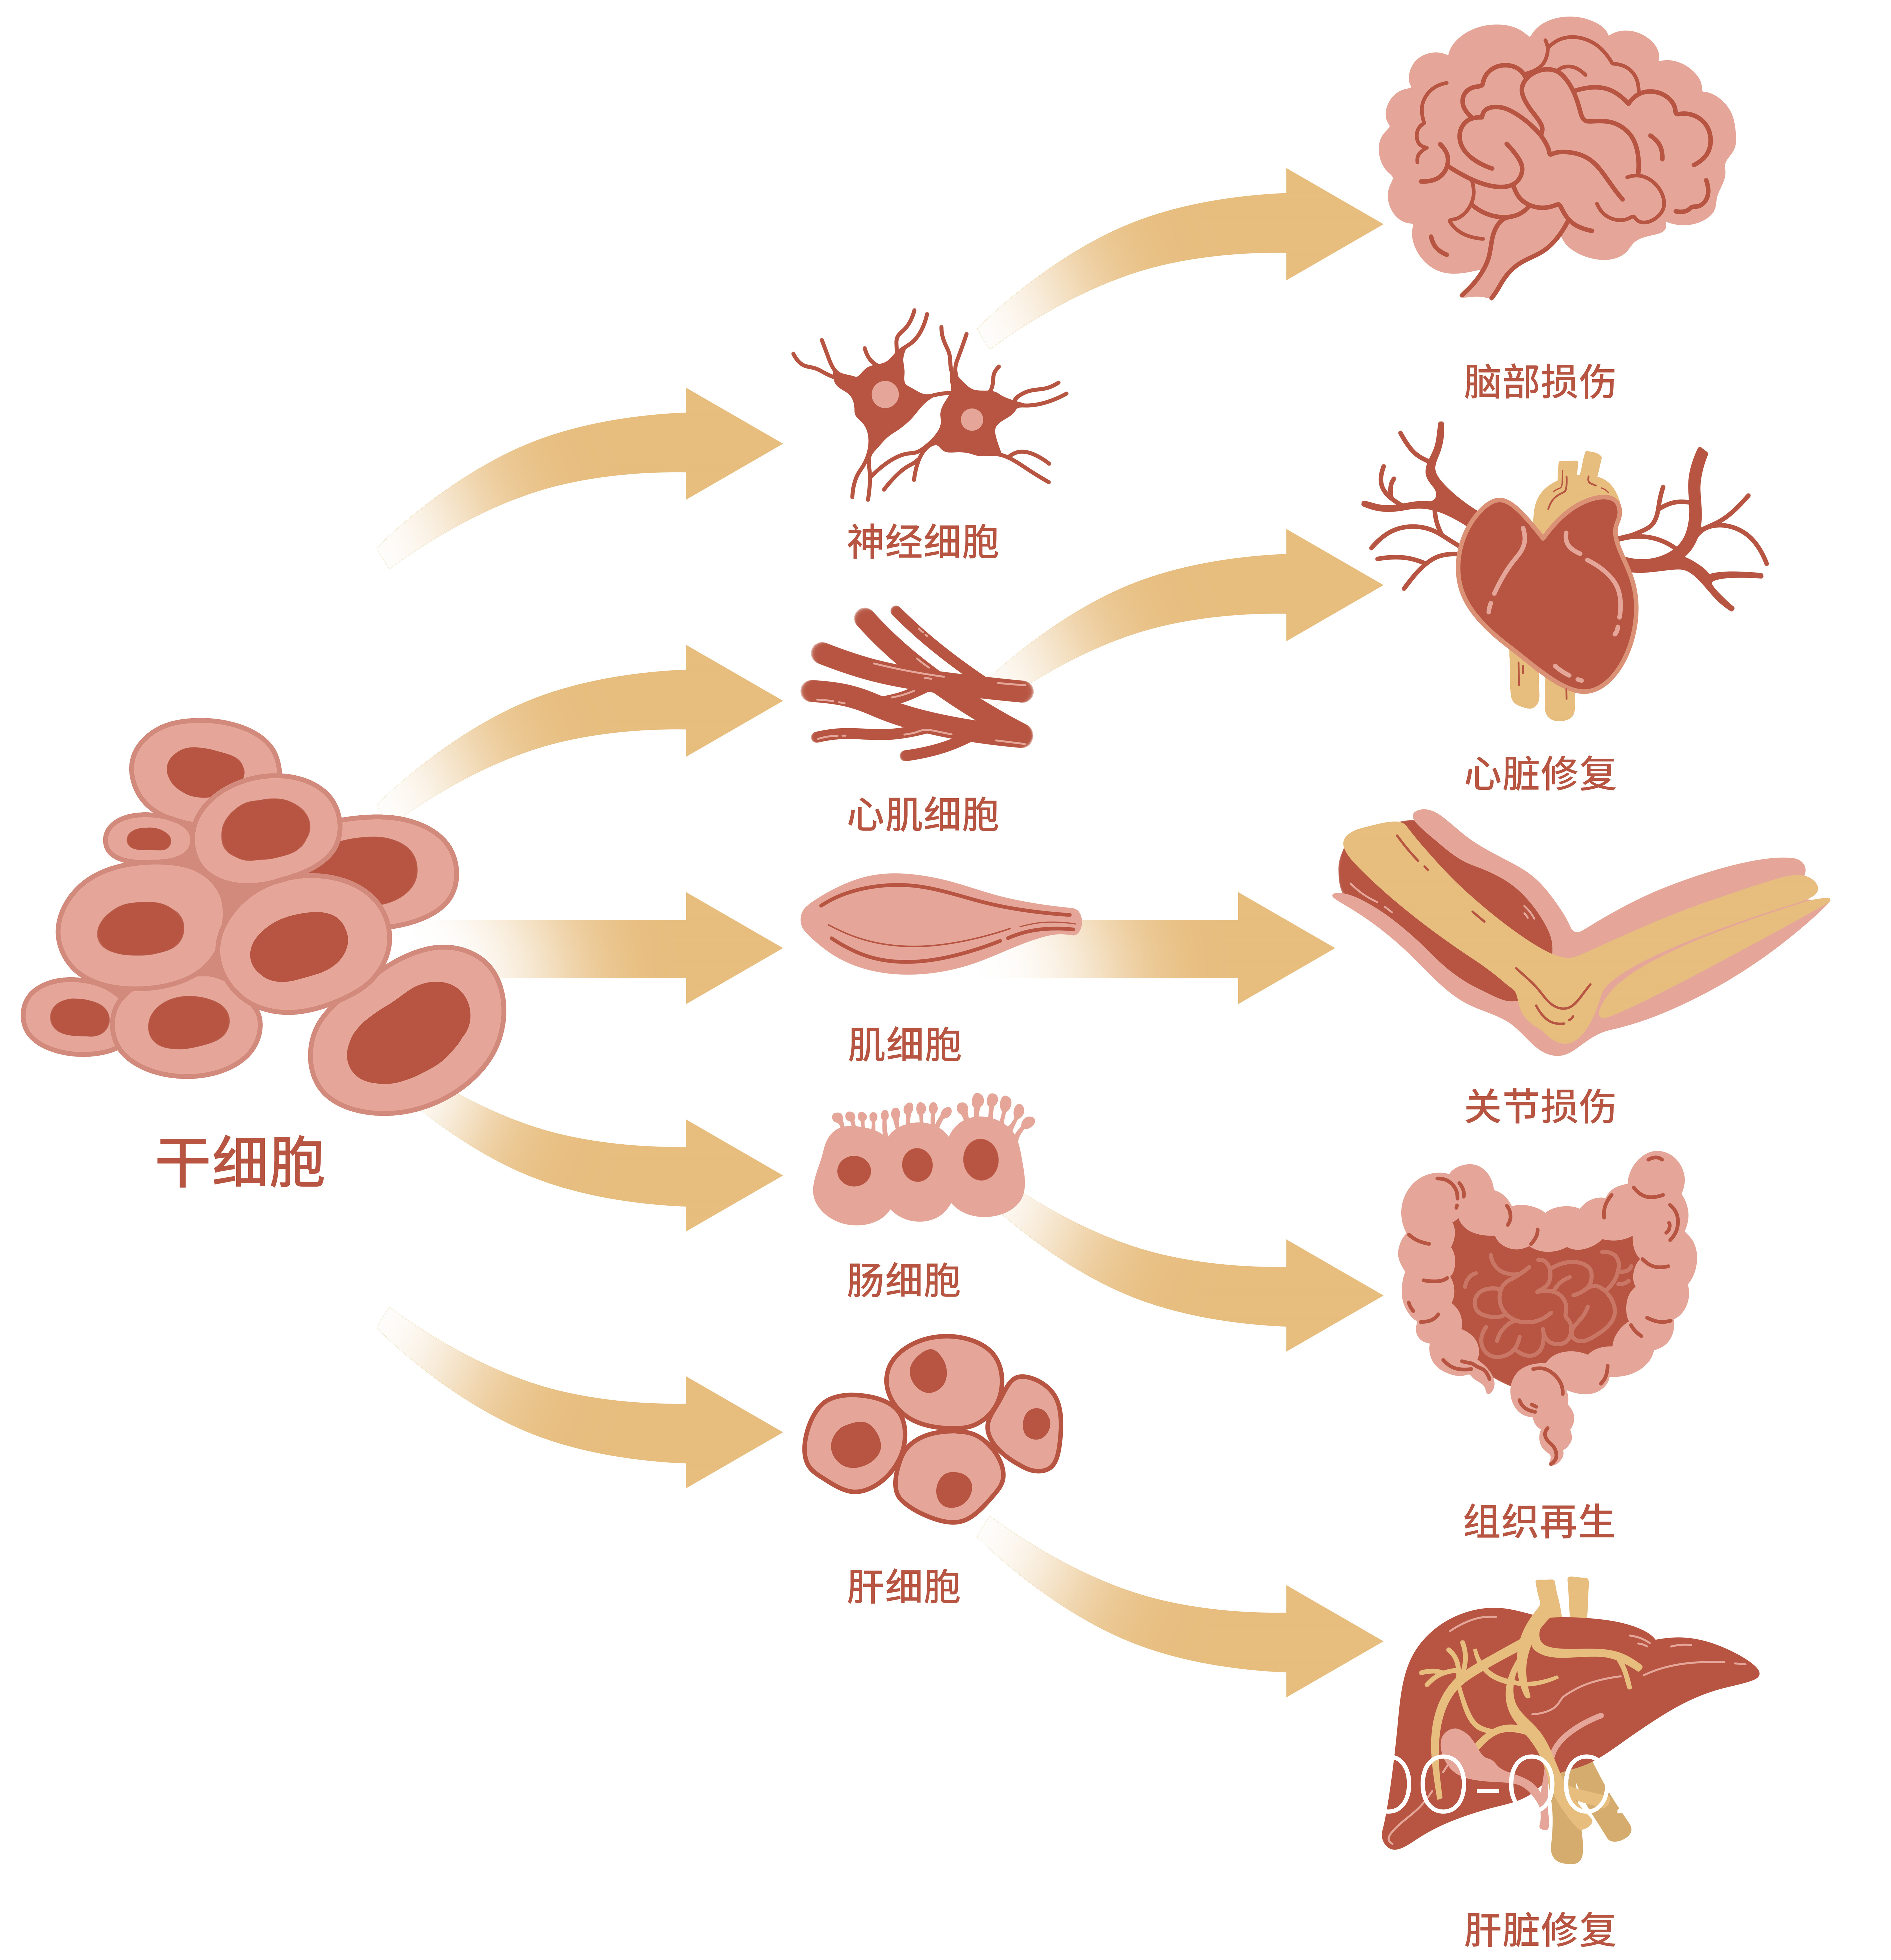 中国干细胞公司排名-中科物谷生物干细胞